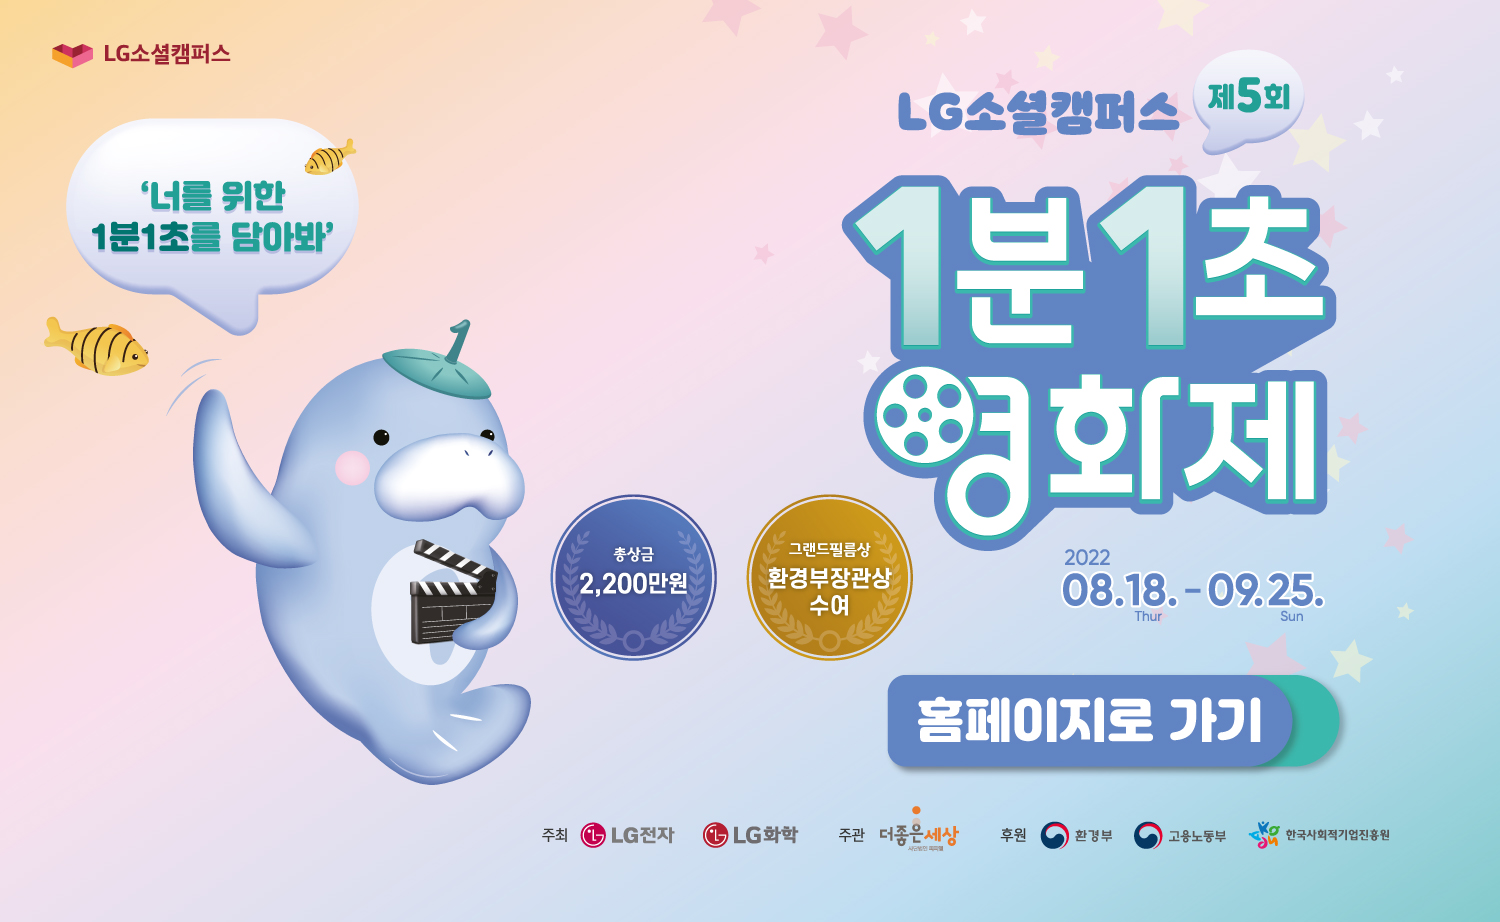 2021 LG소셜캠퍼스 1분1초영화제